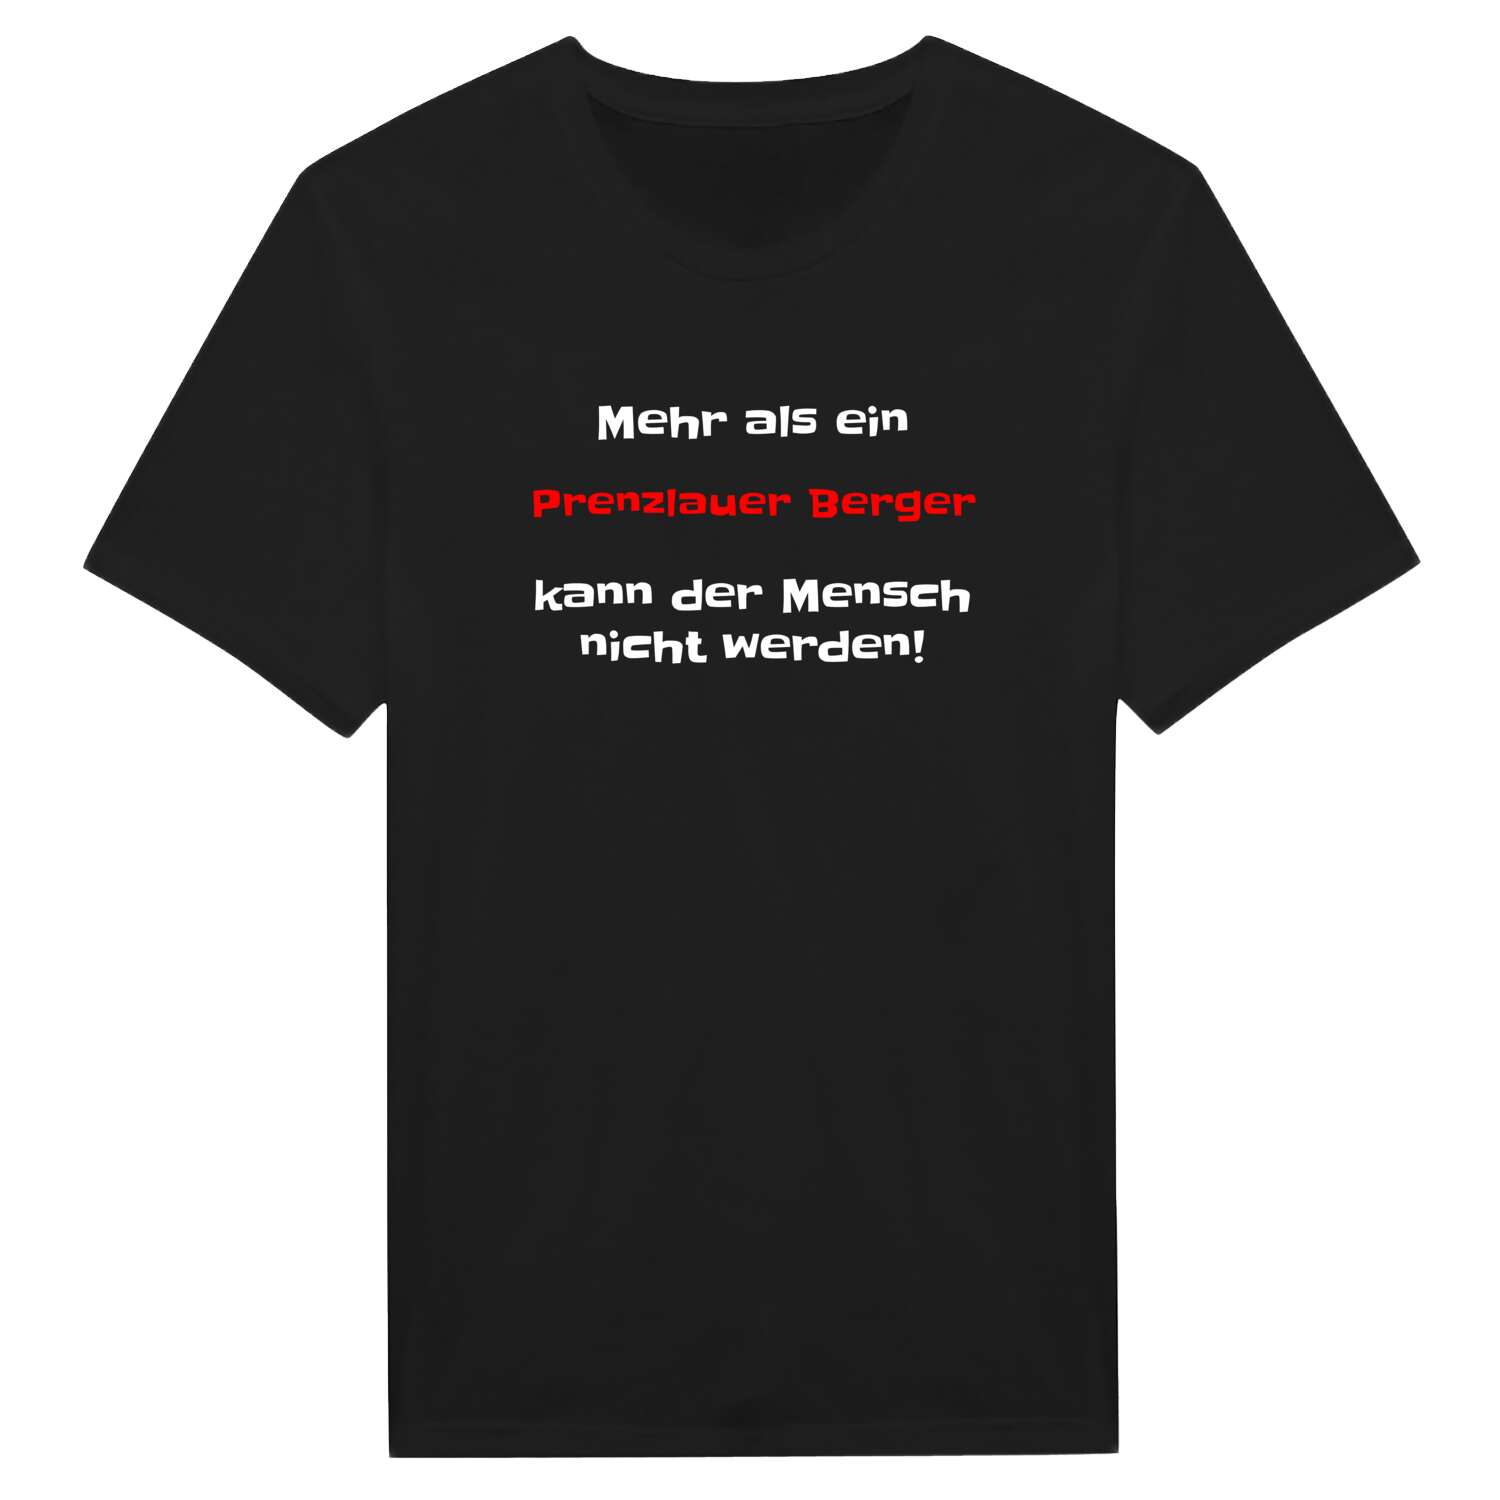 Prenzlauer Berg T-Shirt »Mehr als ein«